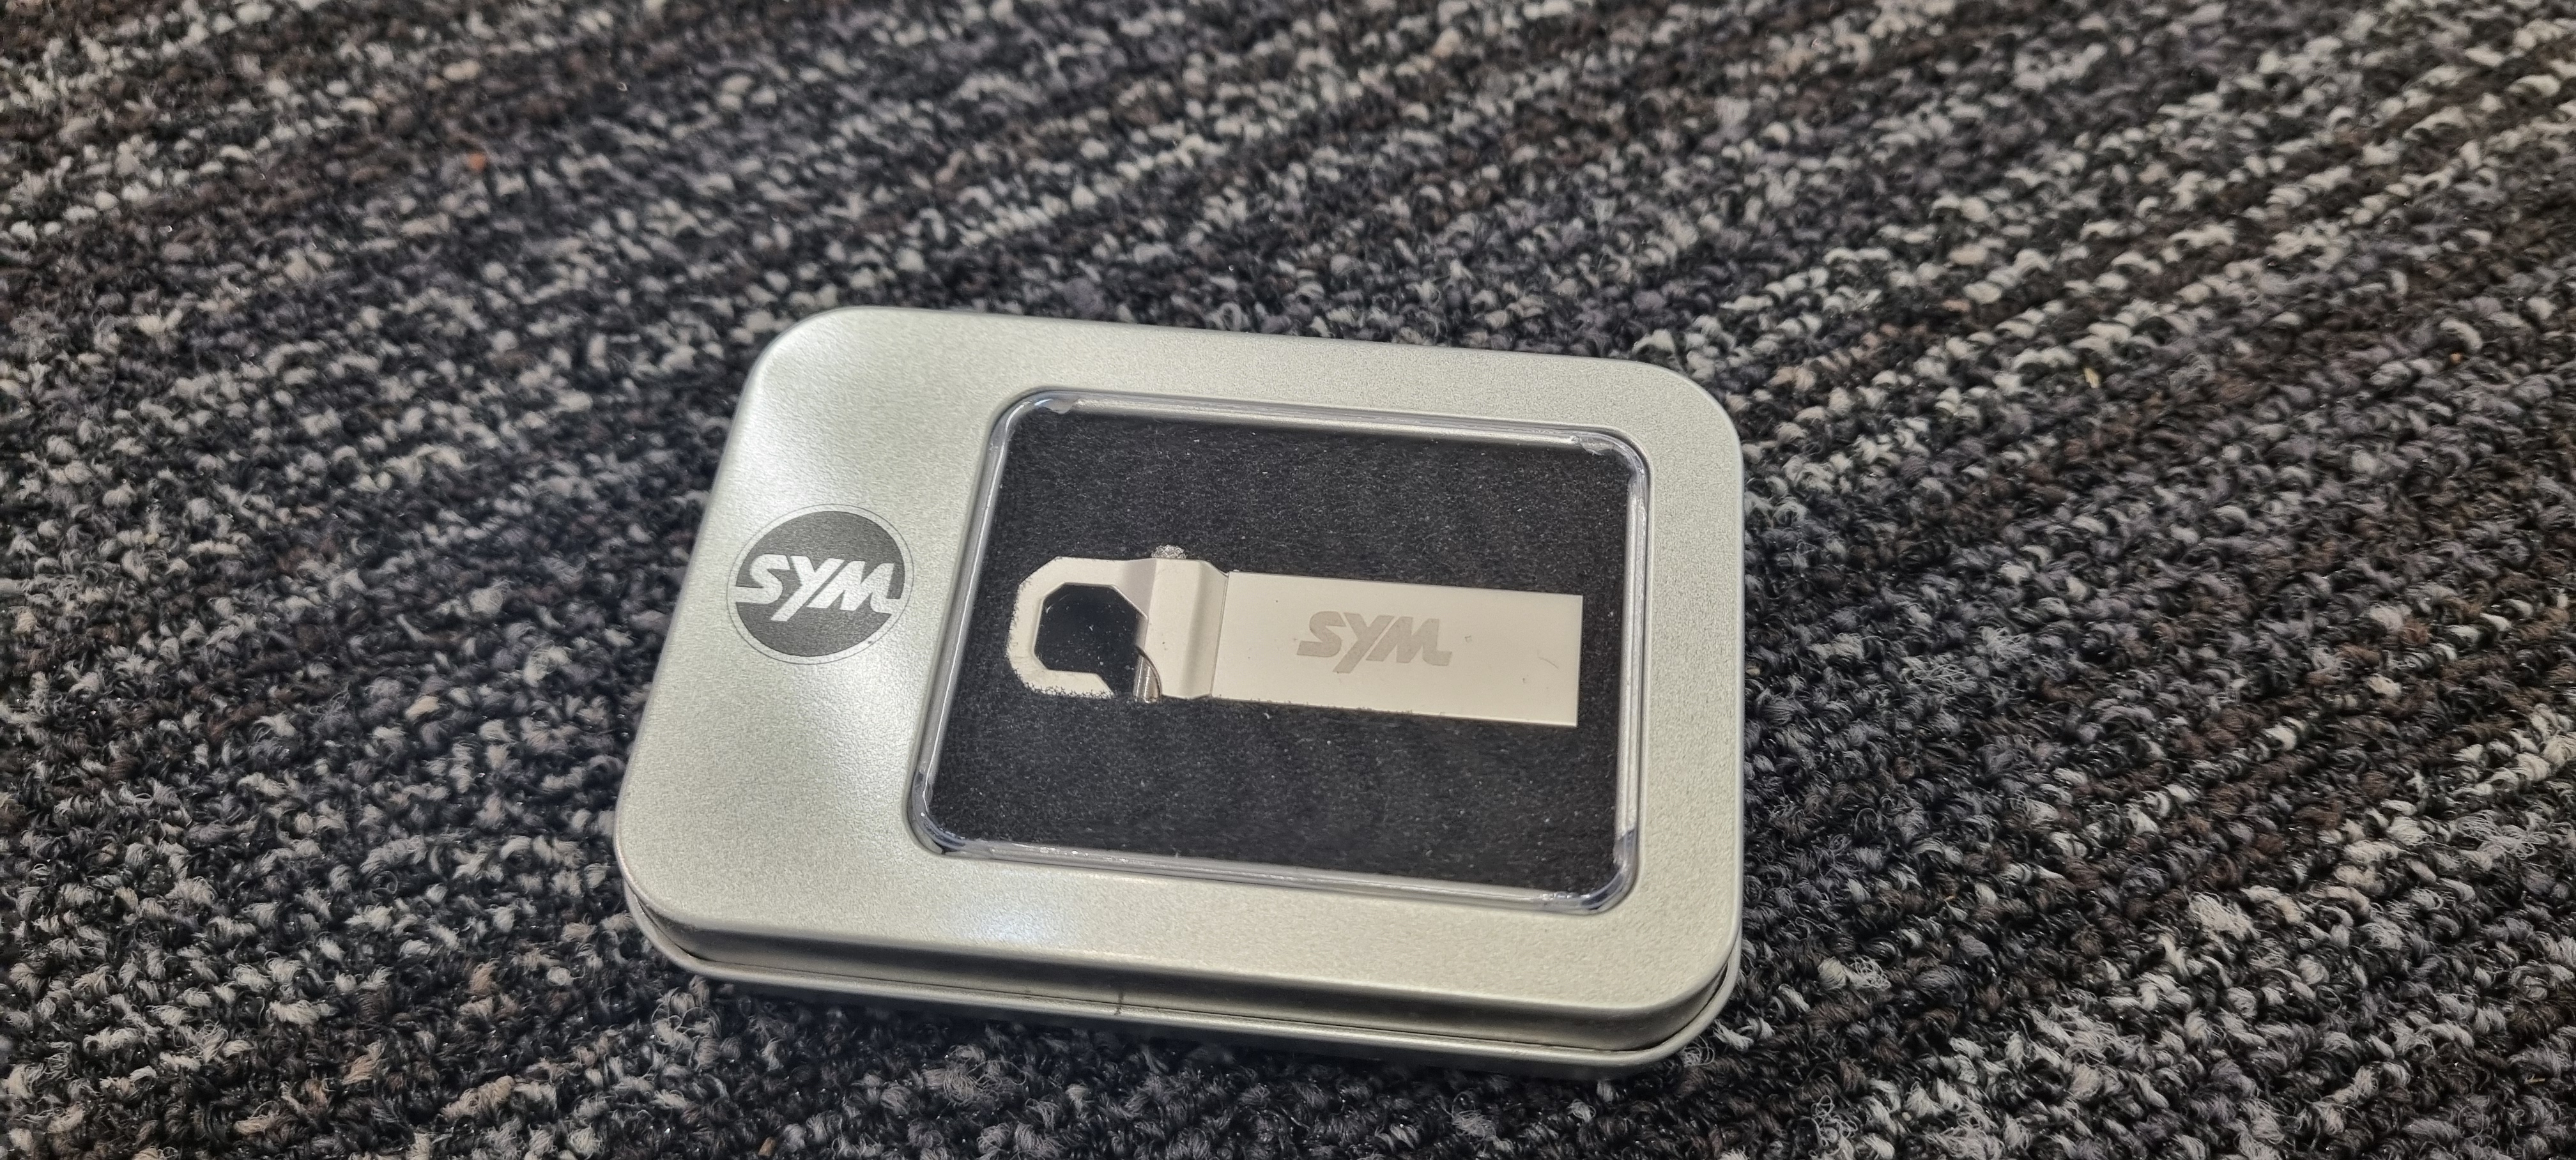 USB Stick SYM inkl. Metallbox